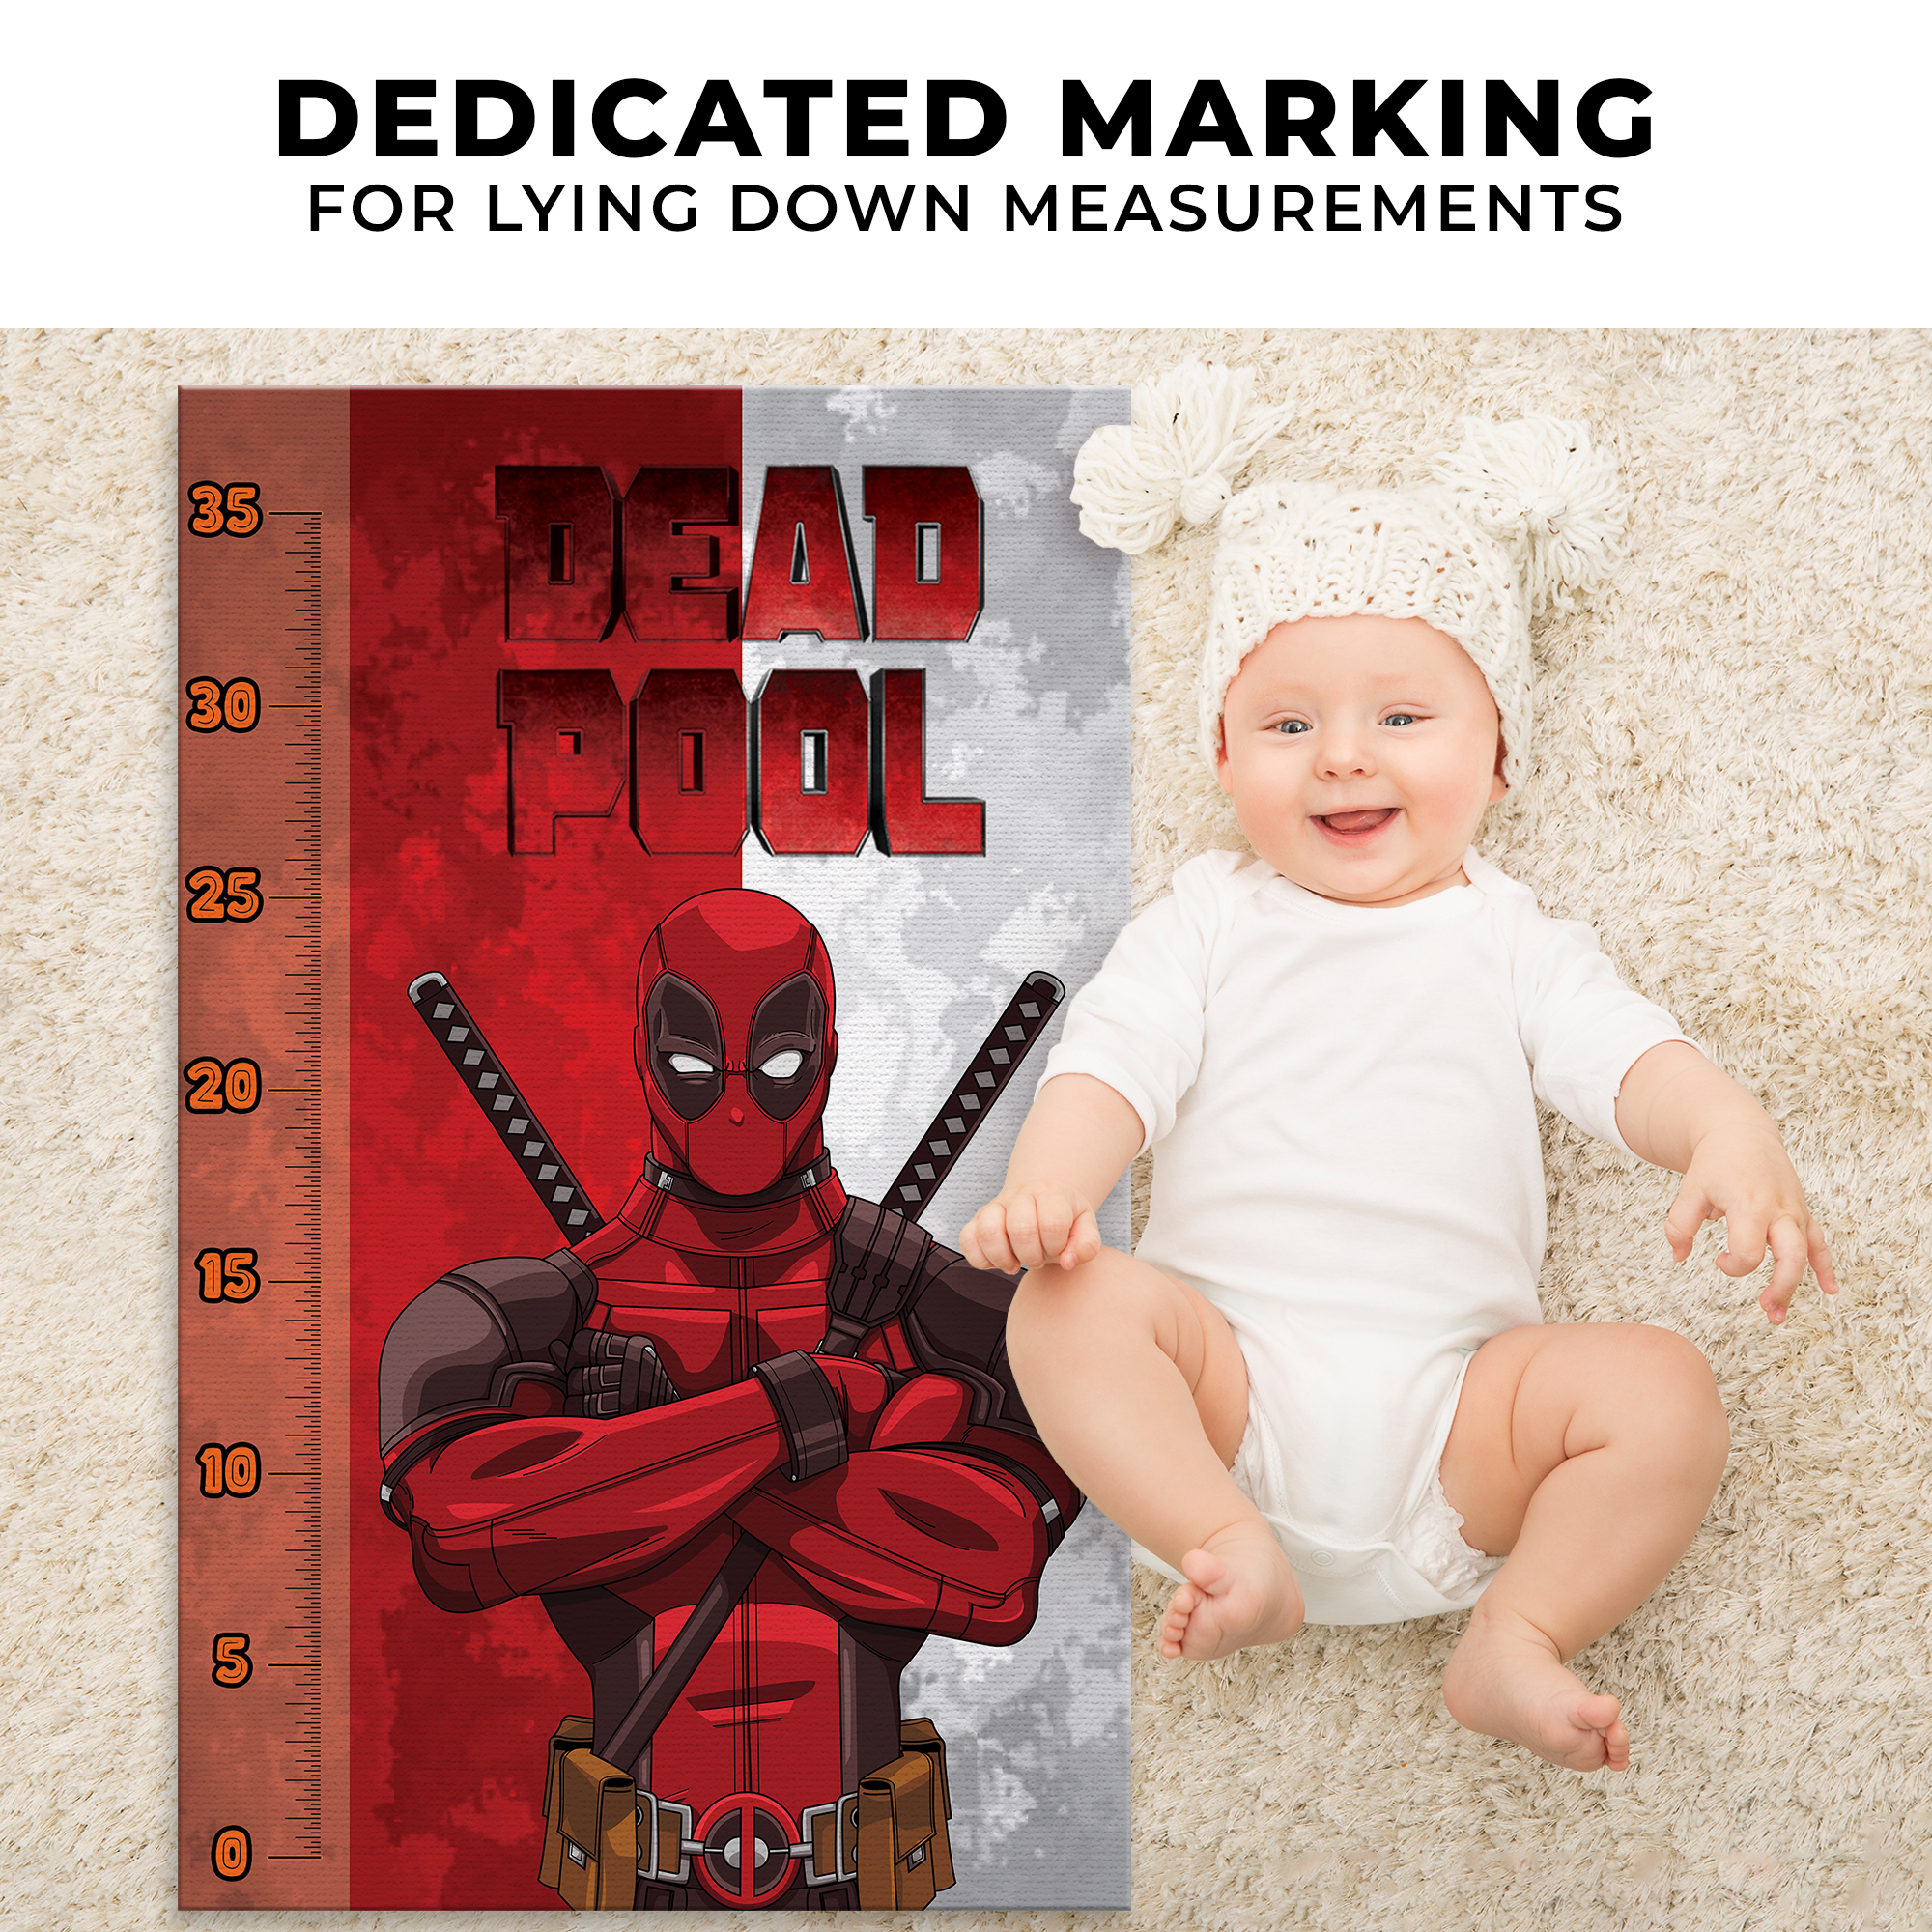 Deadpool Infant Growth Chart